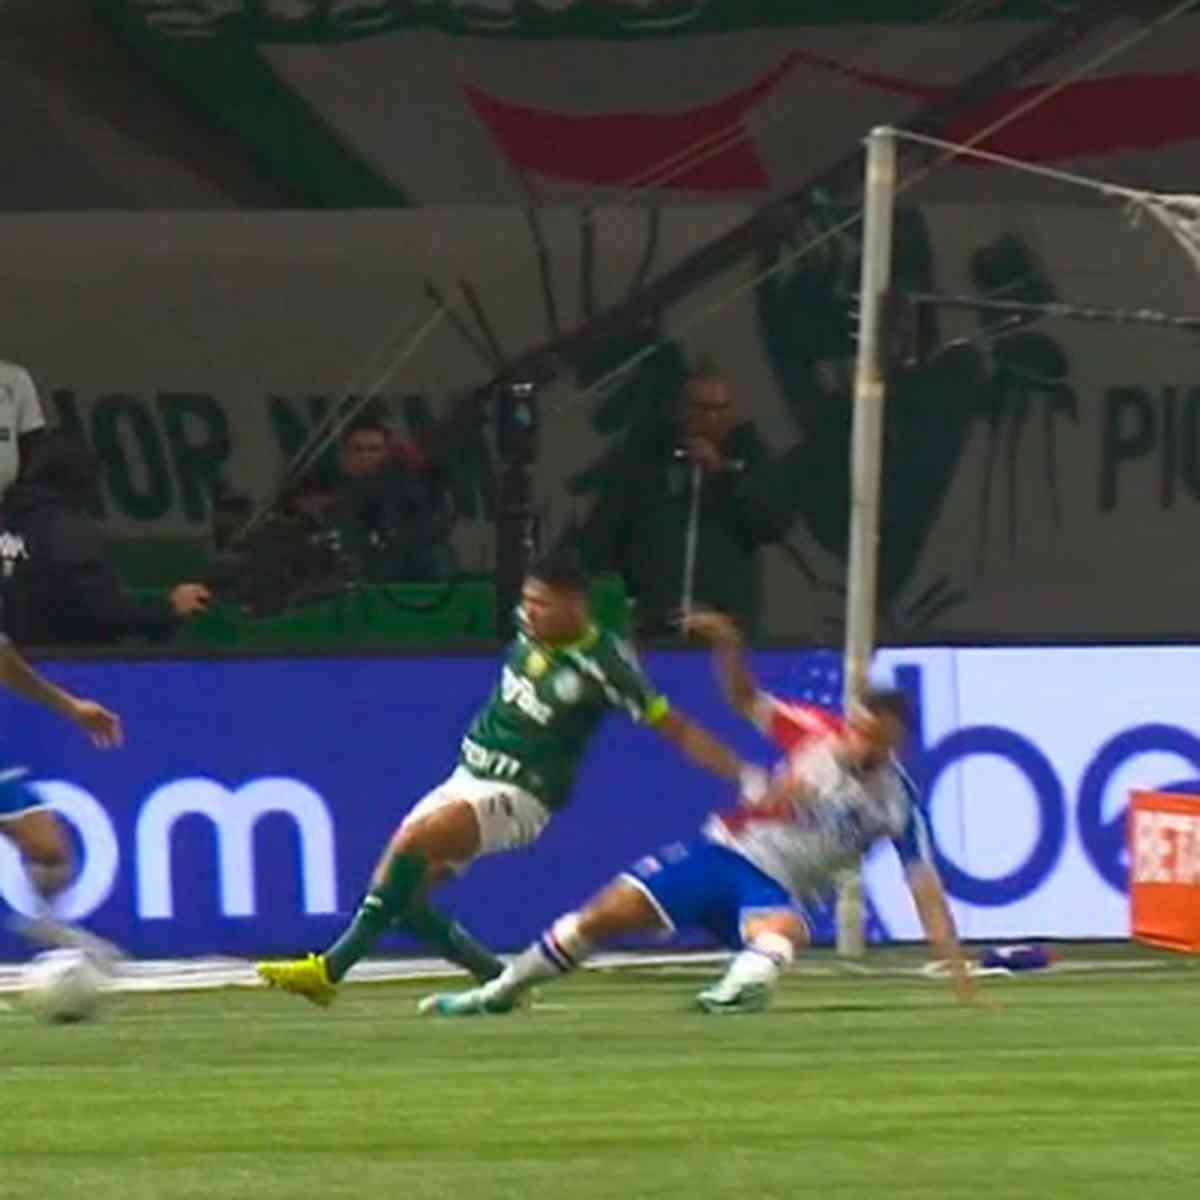 Um momento incrível entre GRs: Roncaglio defende penalti com a cara, tomba  com a baliza e foi Sarmiento (outro GR) a acudir (VIDEO) : A Última Barreira